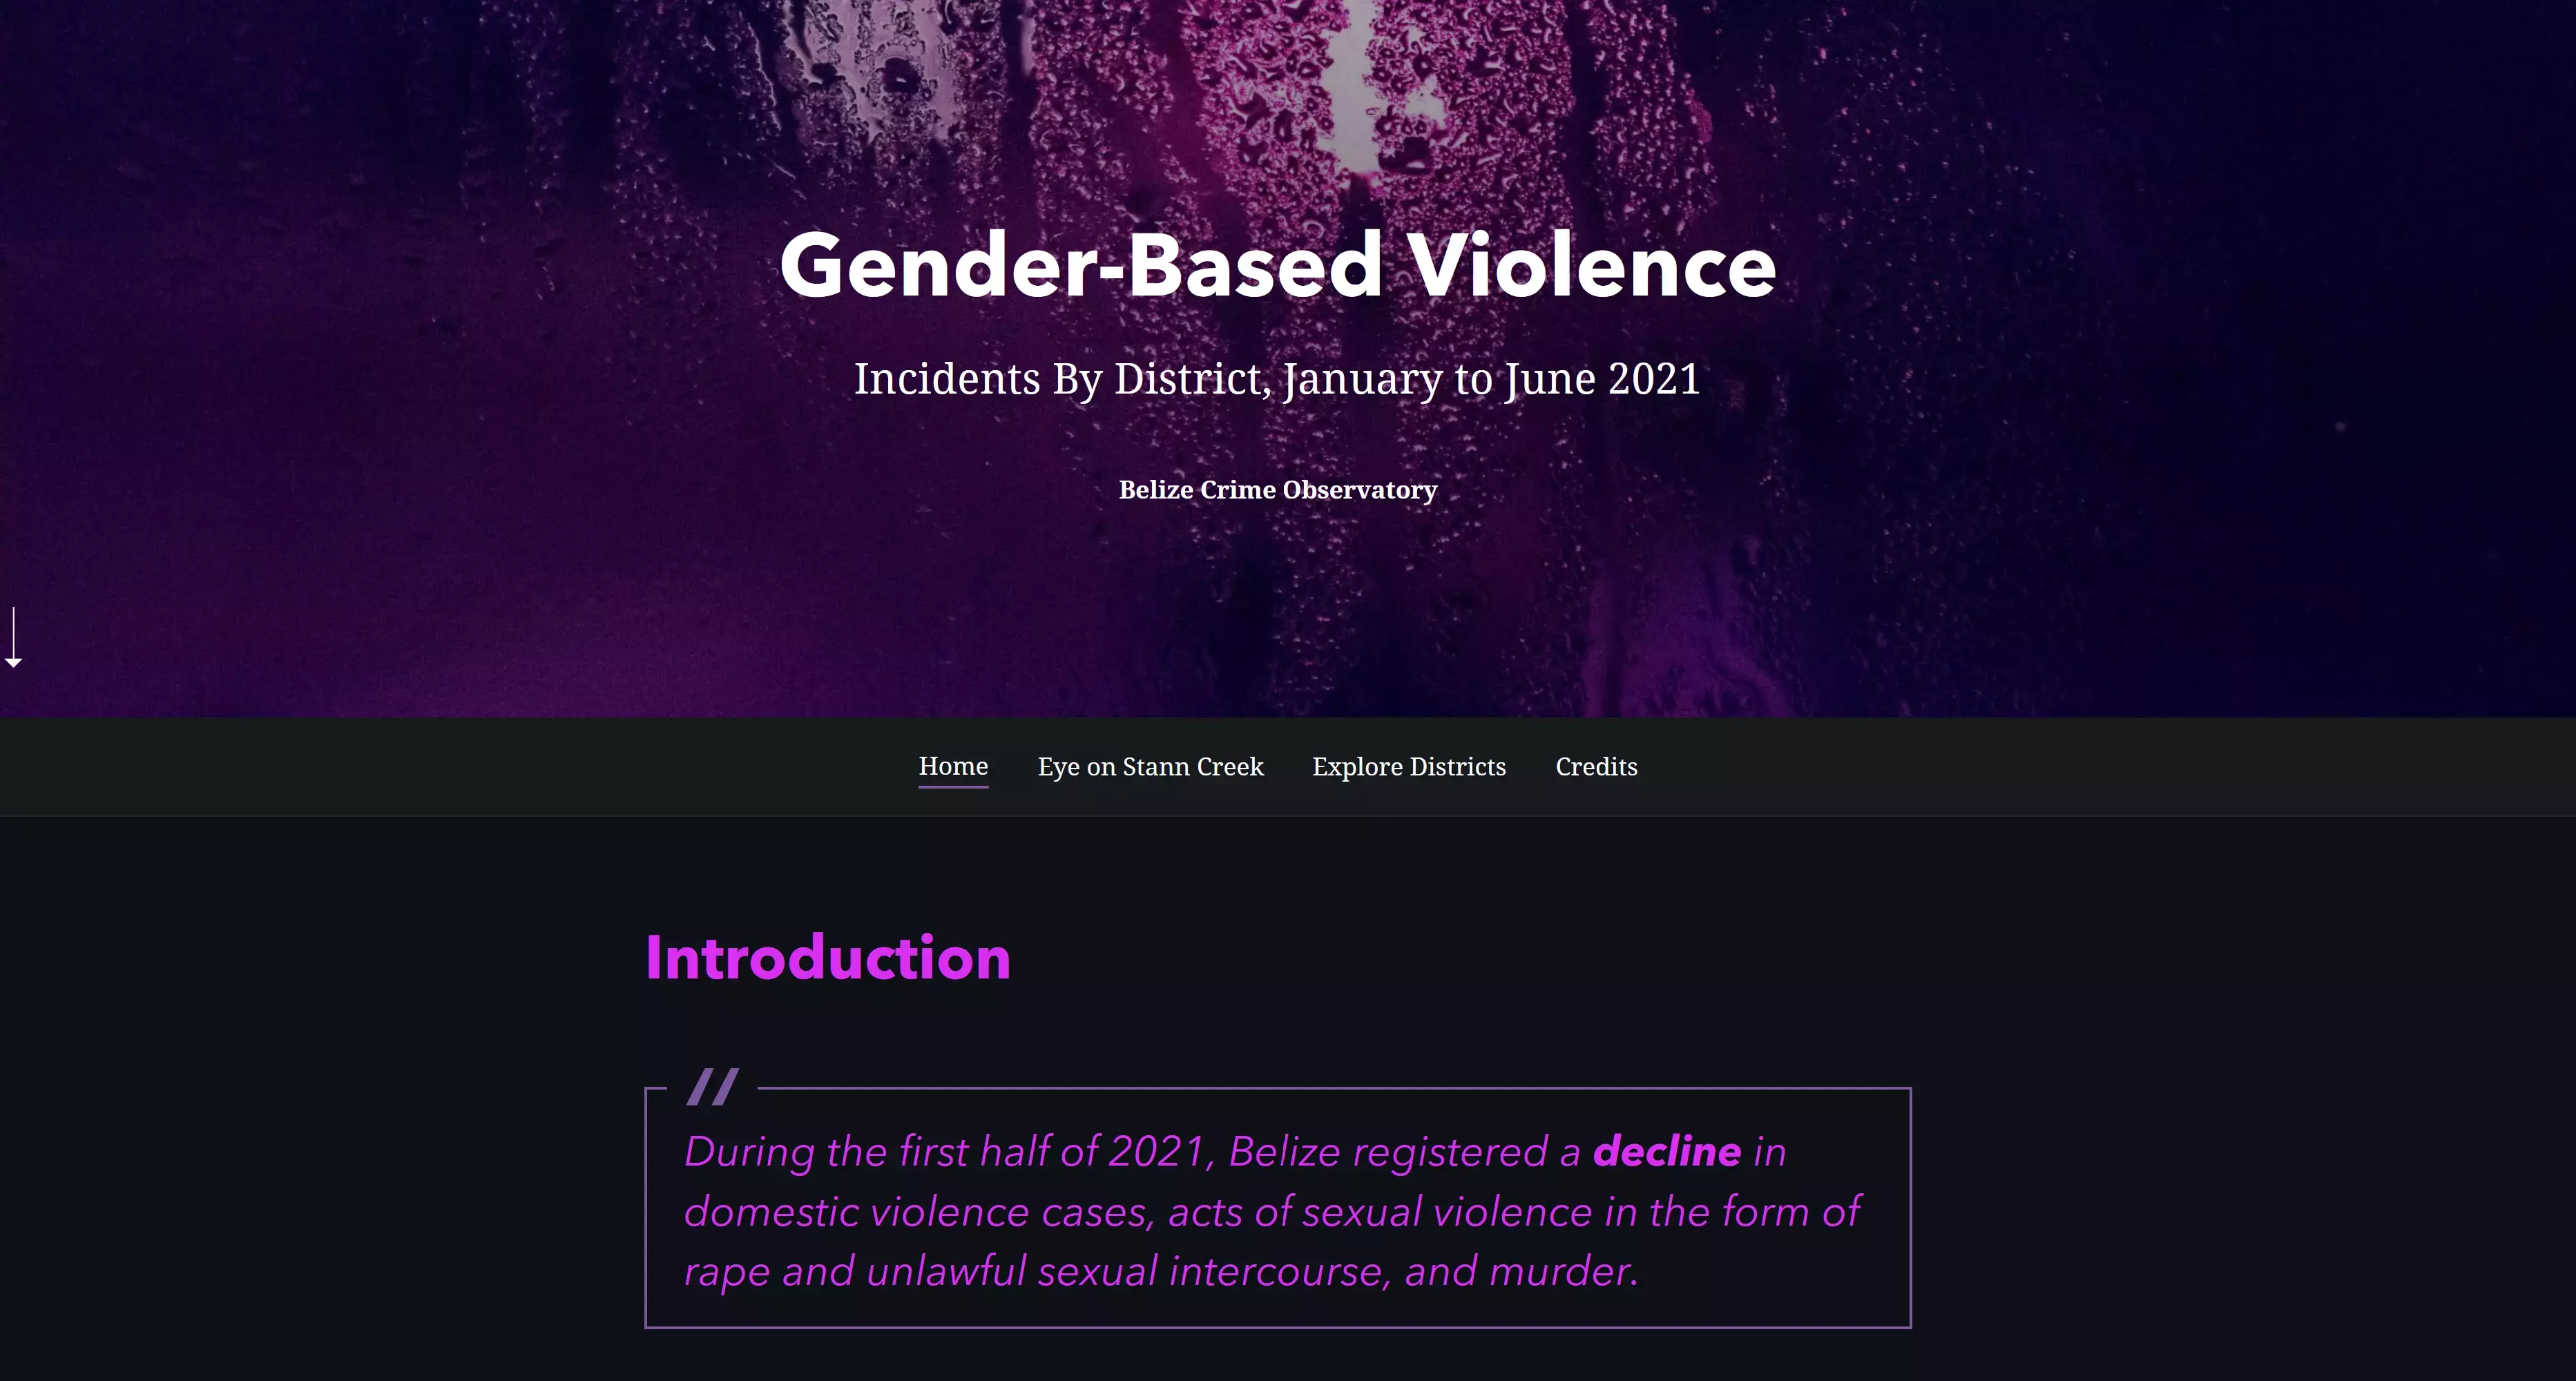 Una visualización web para comprender la Violencia de Género en Belice